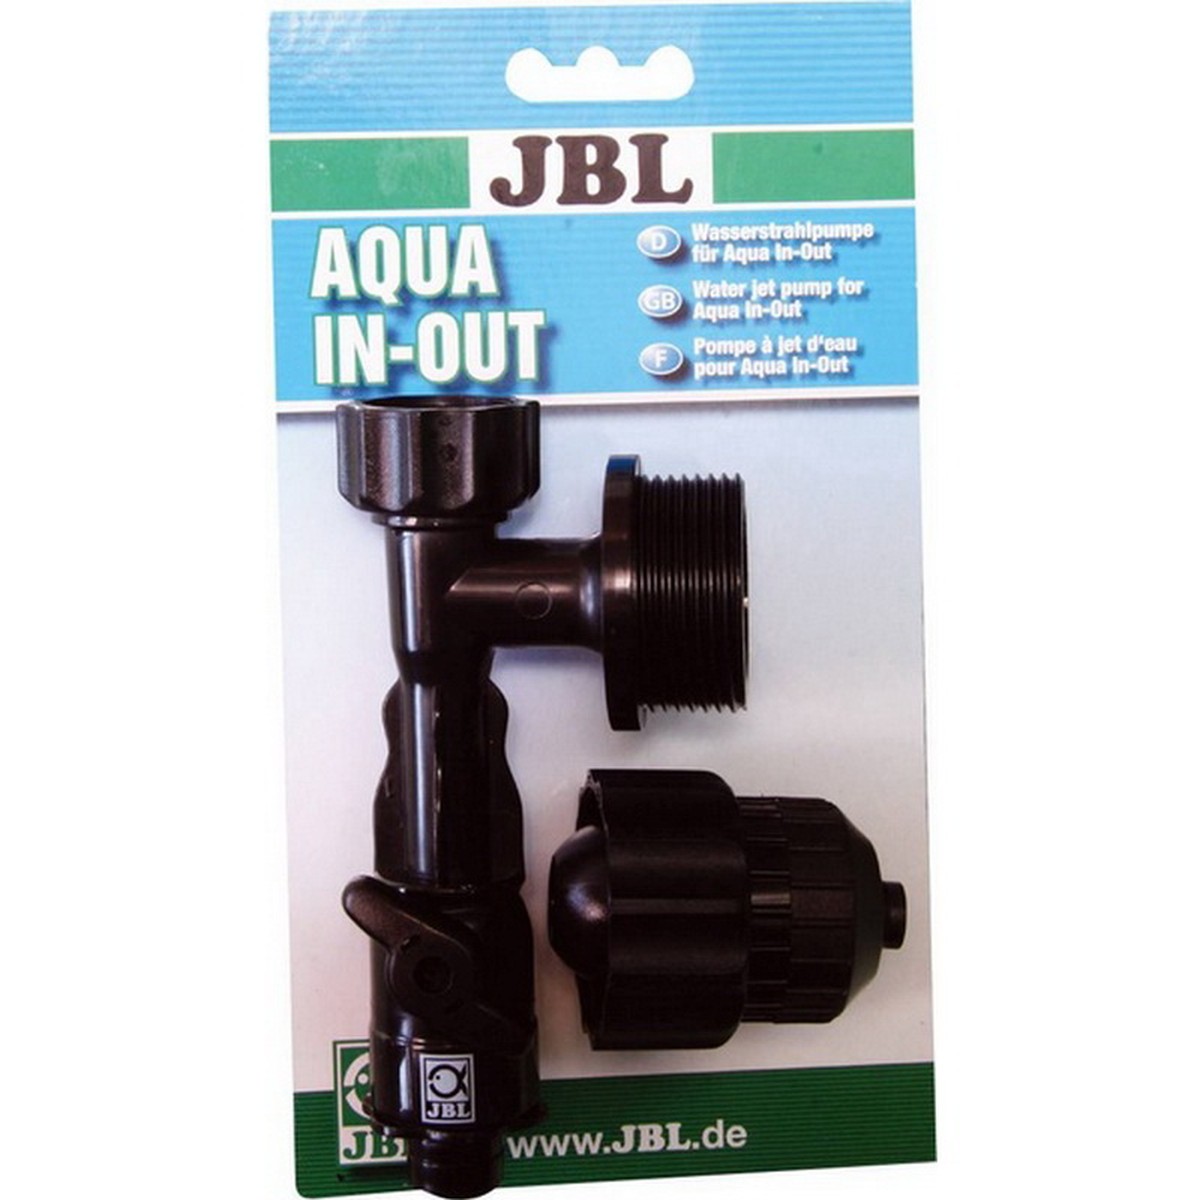   JBL Aqua In-Out Pompe eau claire  